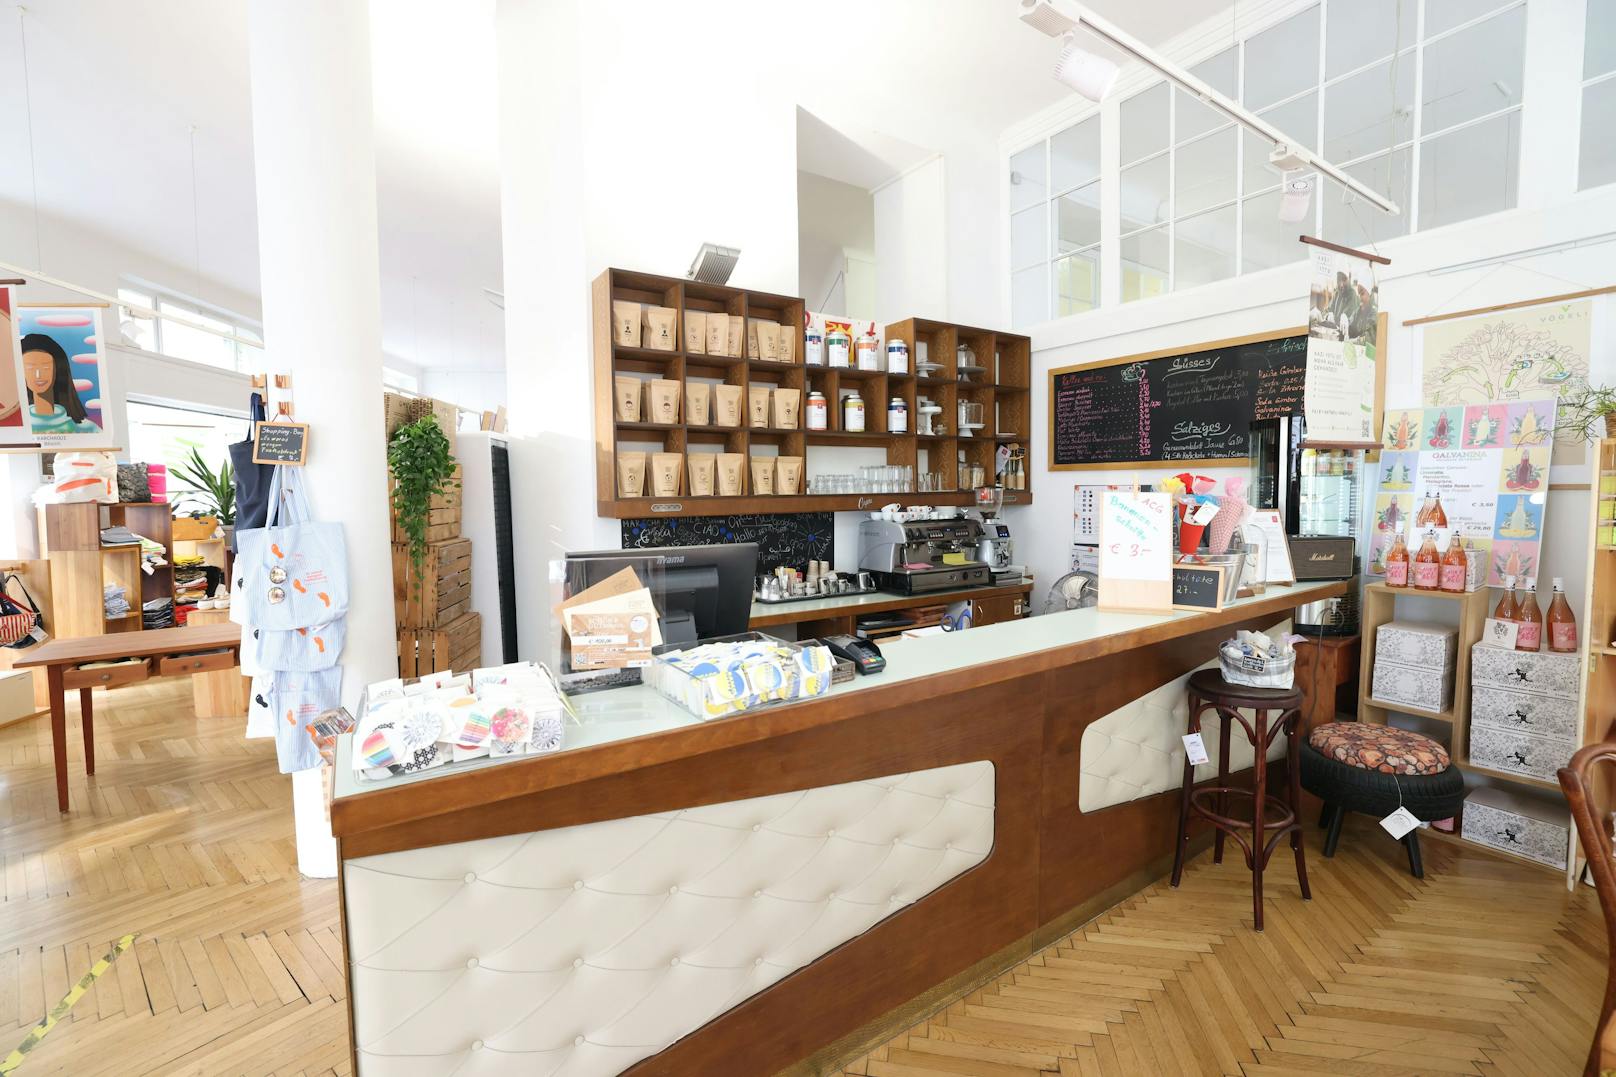 Im Café des Shops "Schön und Gut" arbeiten Menschen, die in der Gastronomie ausgebildet werden und mit viel Geschick und Freundlichkeit den Kaffee servieren